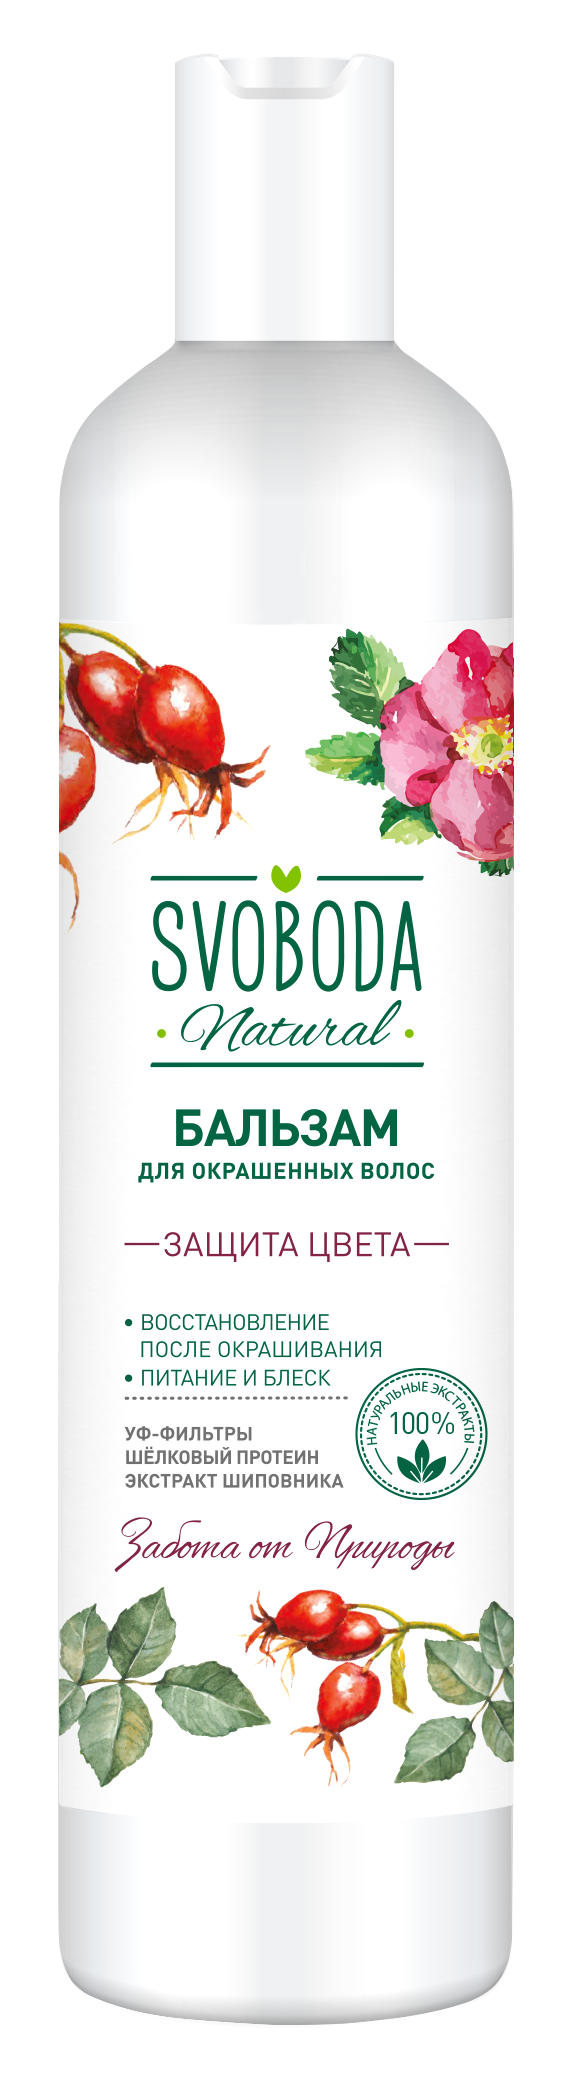 Бальзам-ополаскиватель Svoboda Natural Защита цвета для окрашенных волос 430 мл